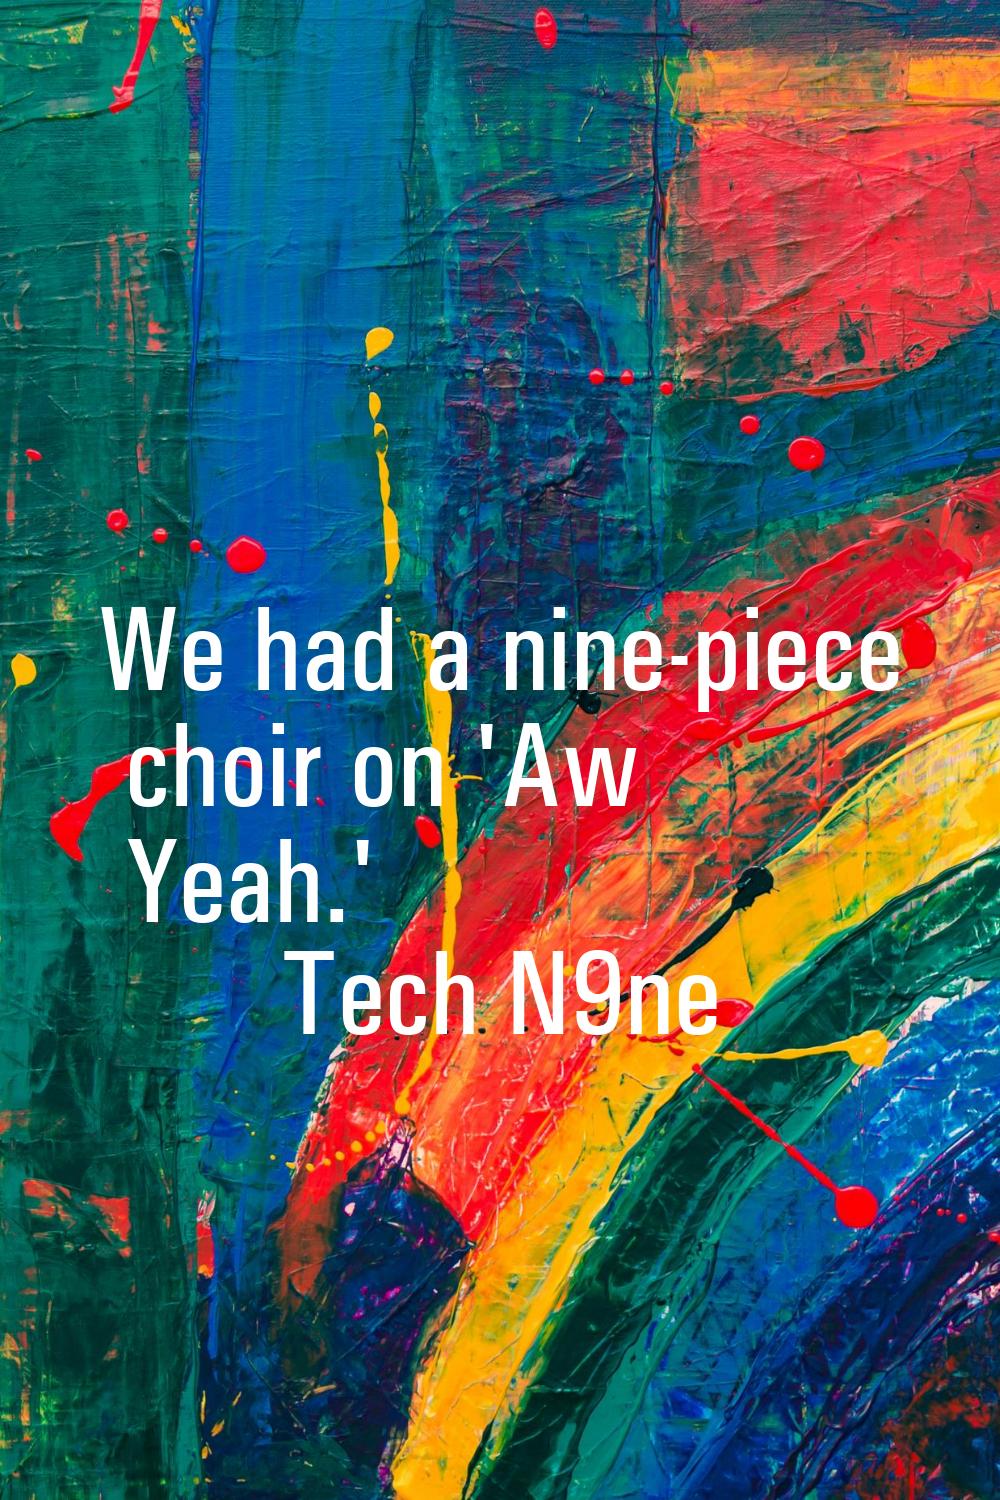 We had a nine-piece choir on 'Aw Yeah.'